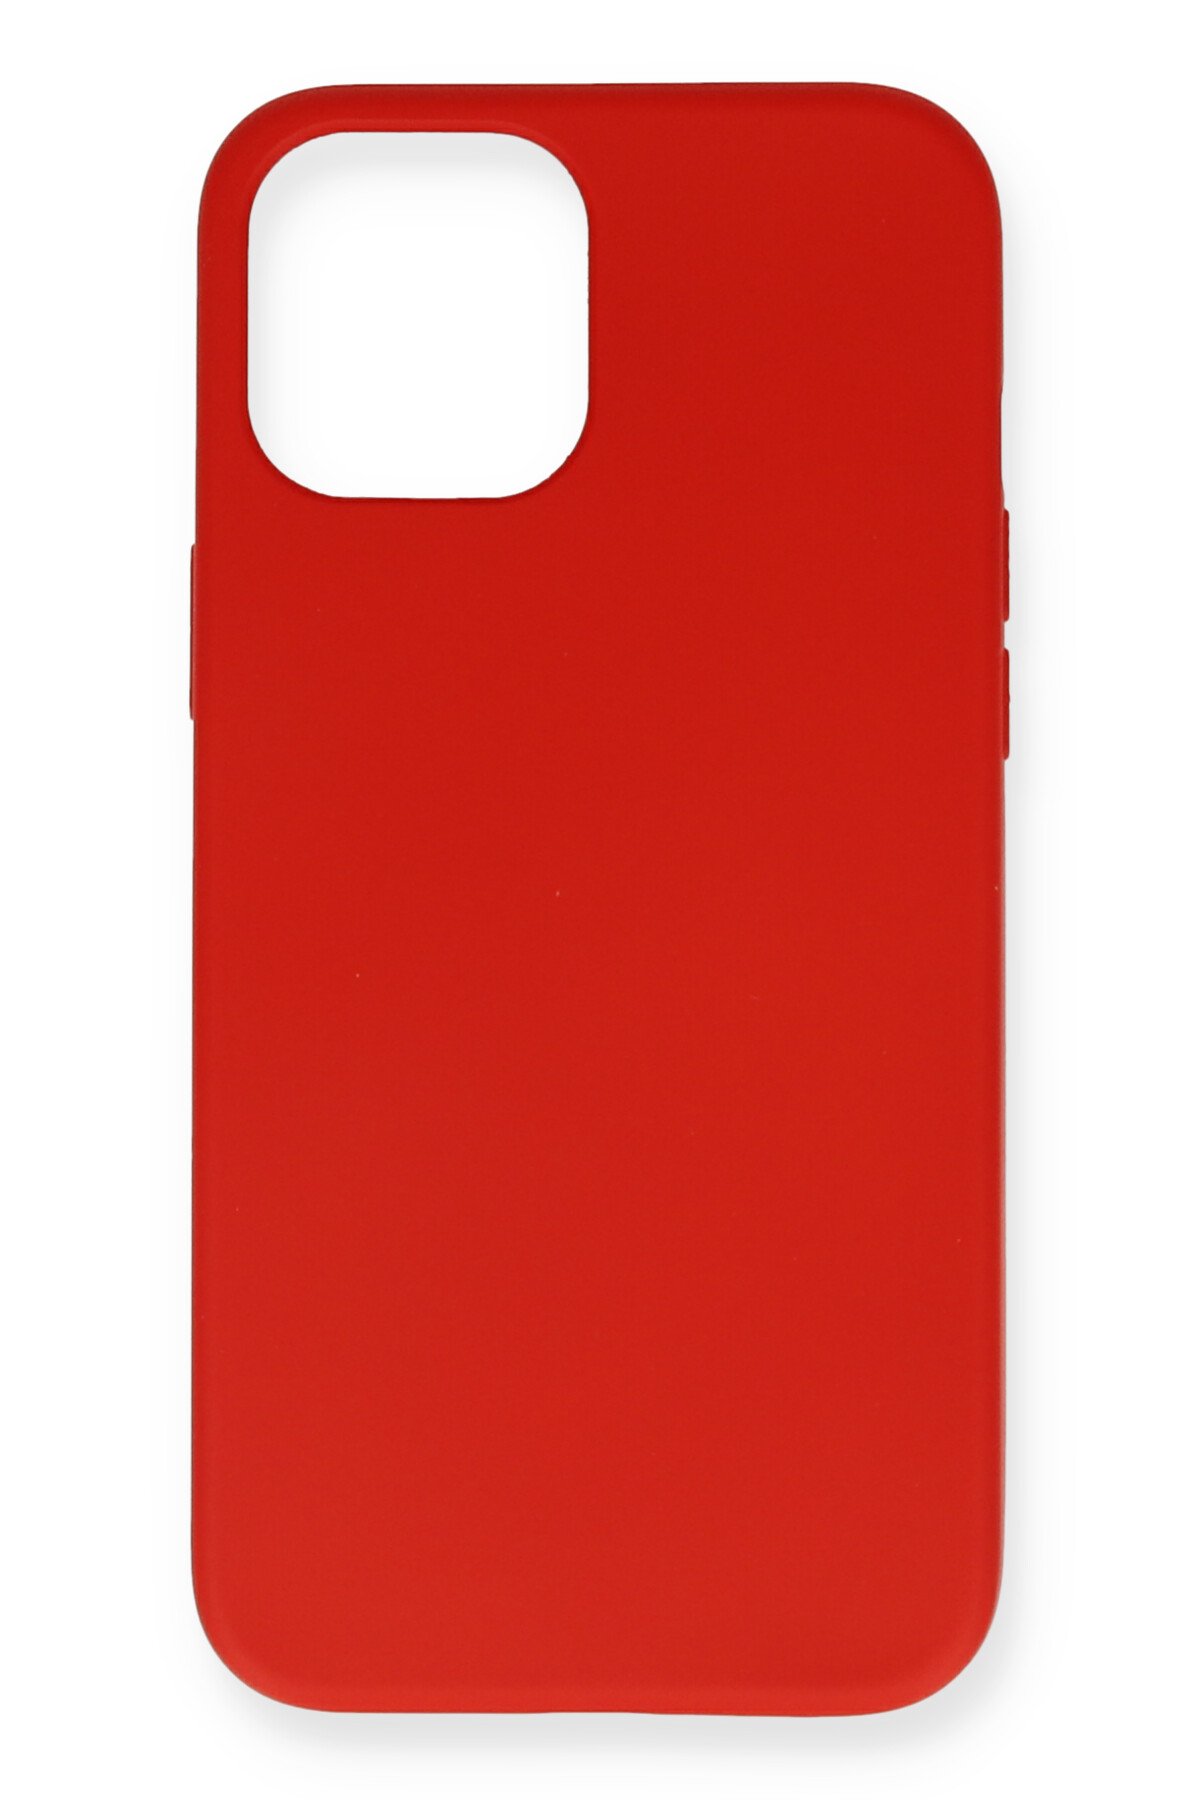 NewFace Newface iPhone 12 Mini Kılıf Nano içi Kadife Silikon - Kırmızı